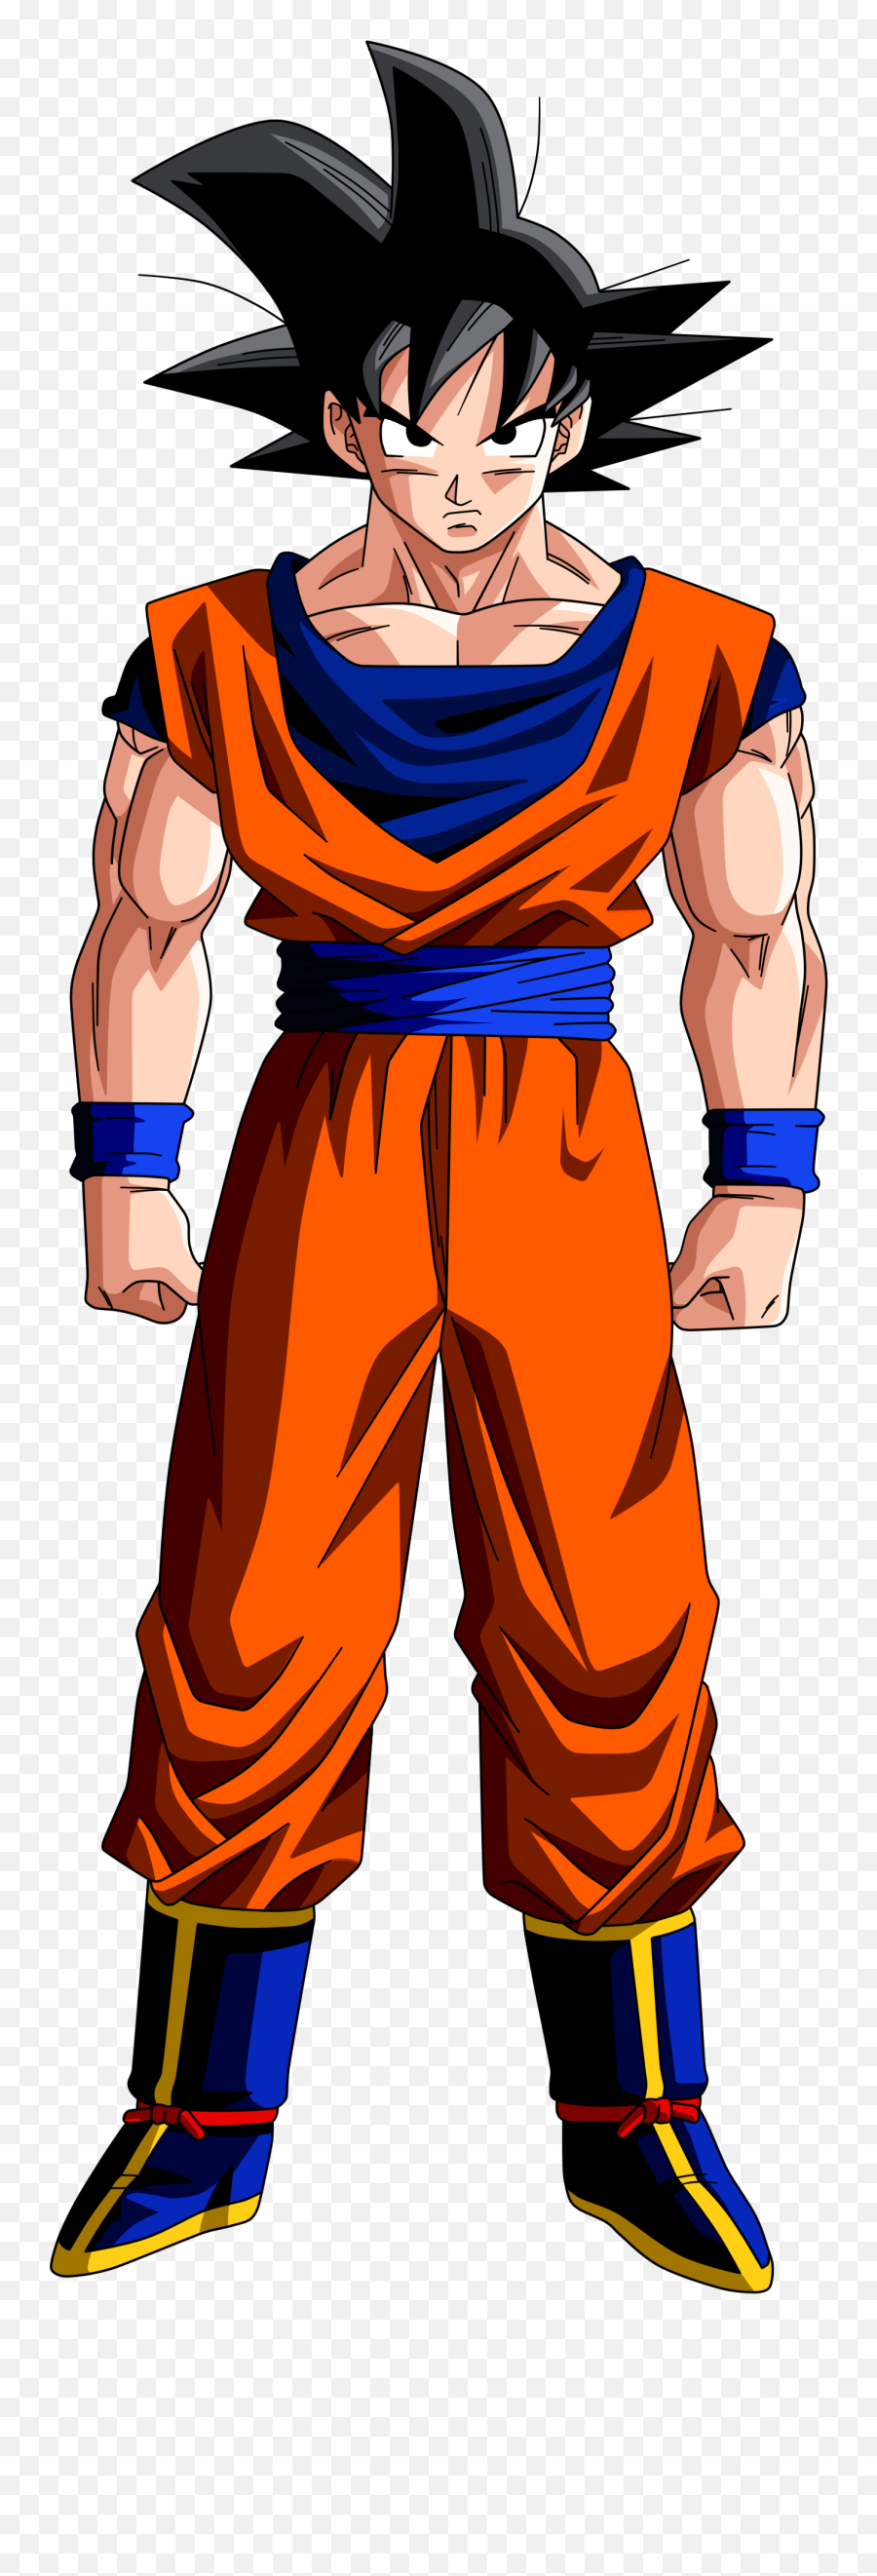 Dragon Ball Goku Transparent Image - Goku Exe Emoji,Goku Png